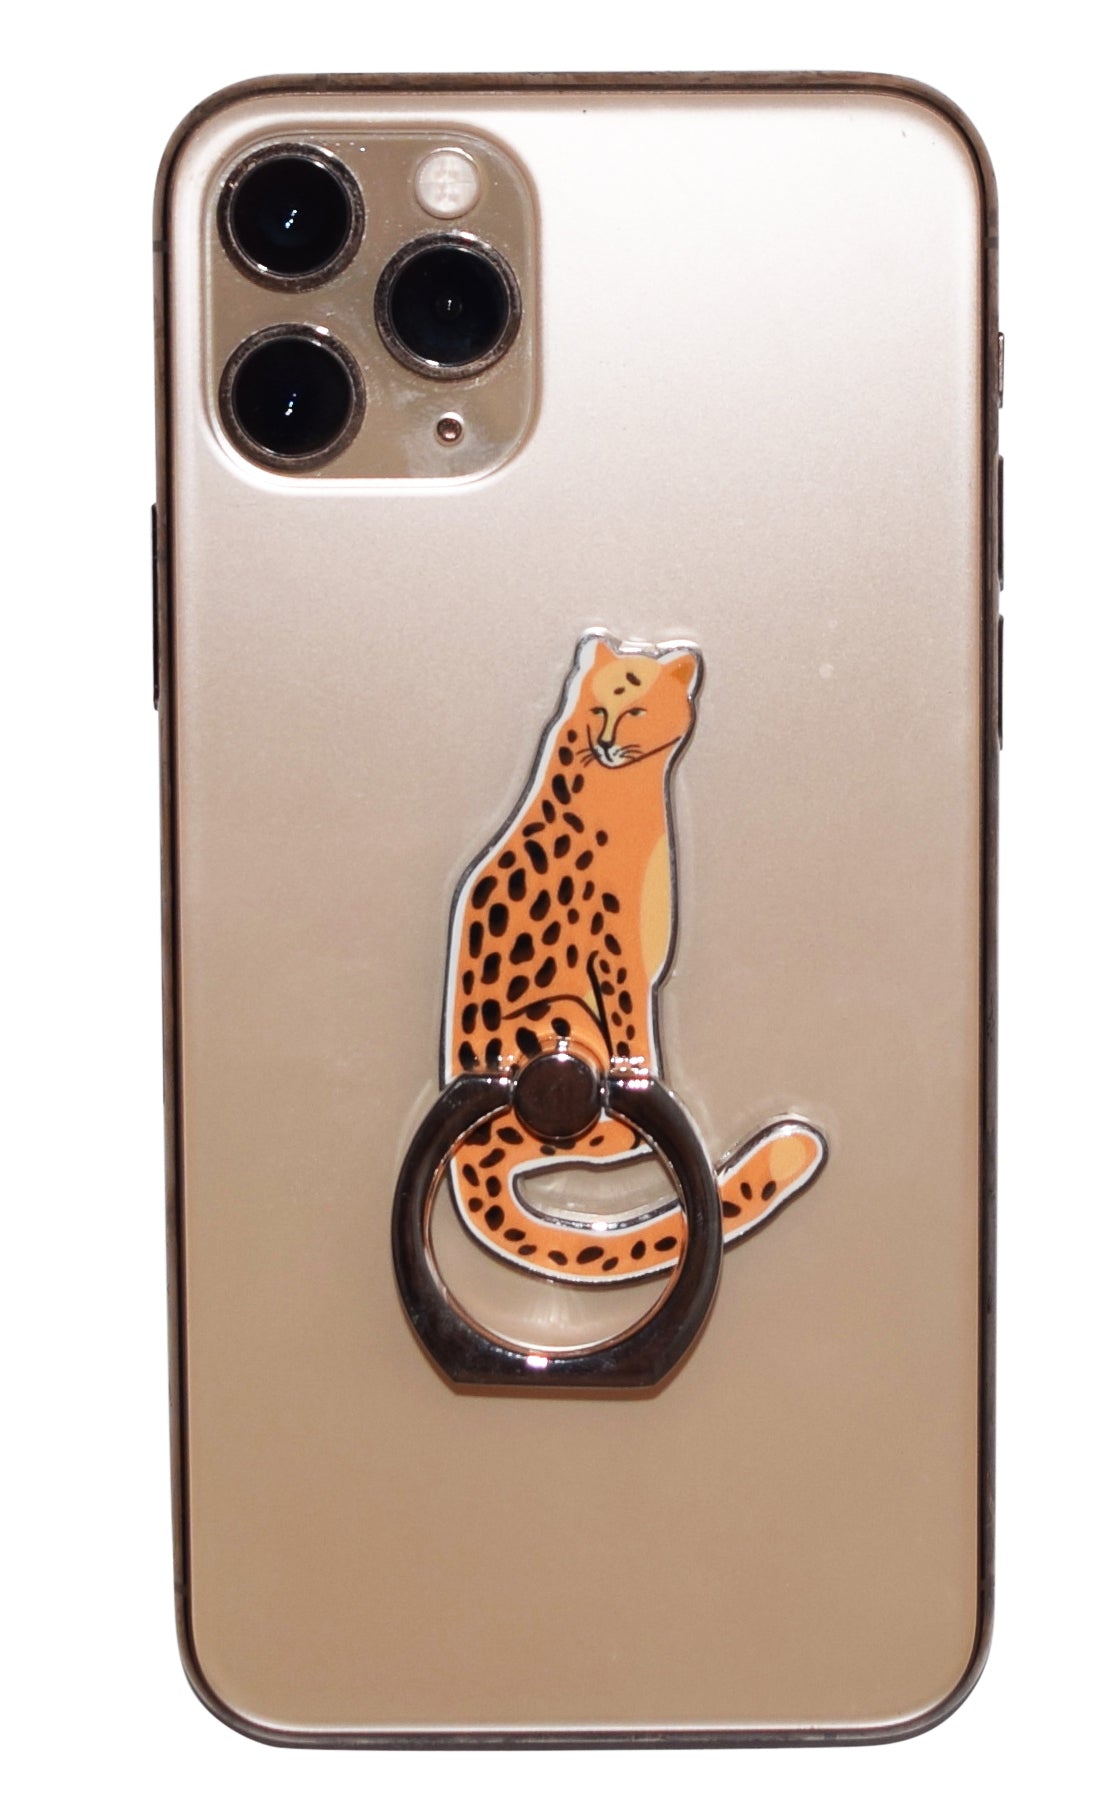 Mobile Phone Ring Cheetah